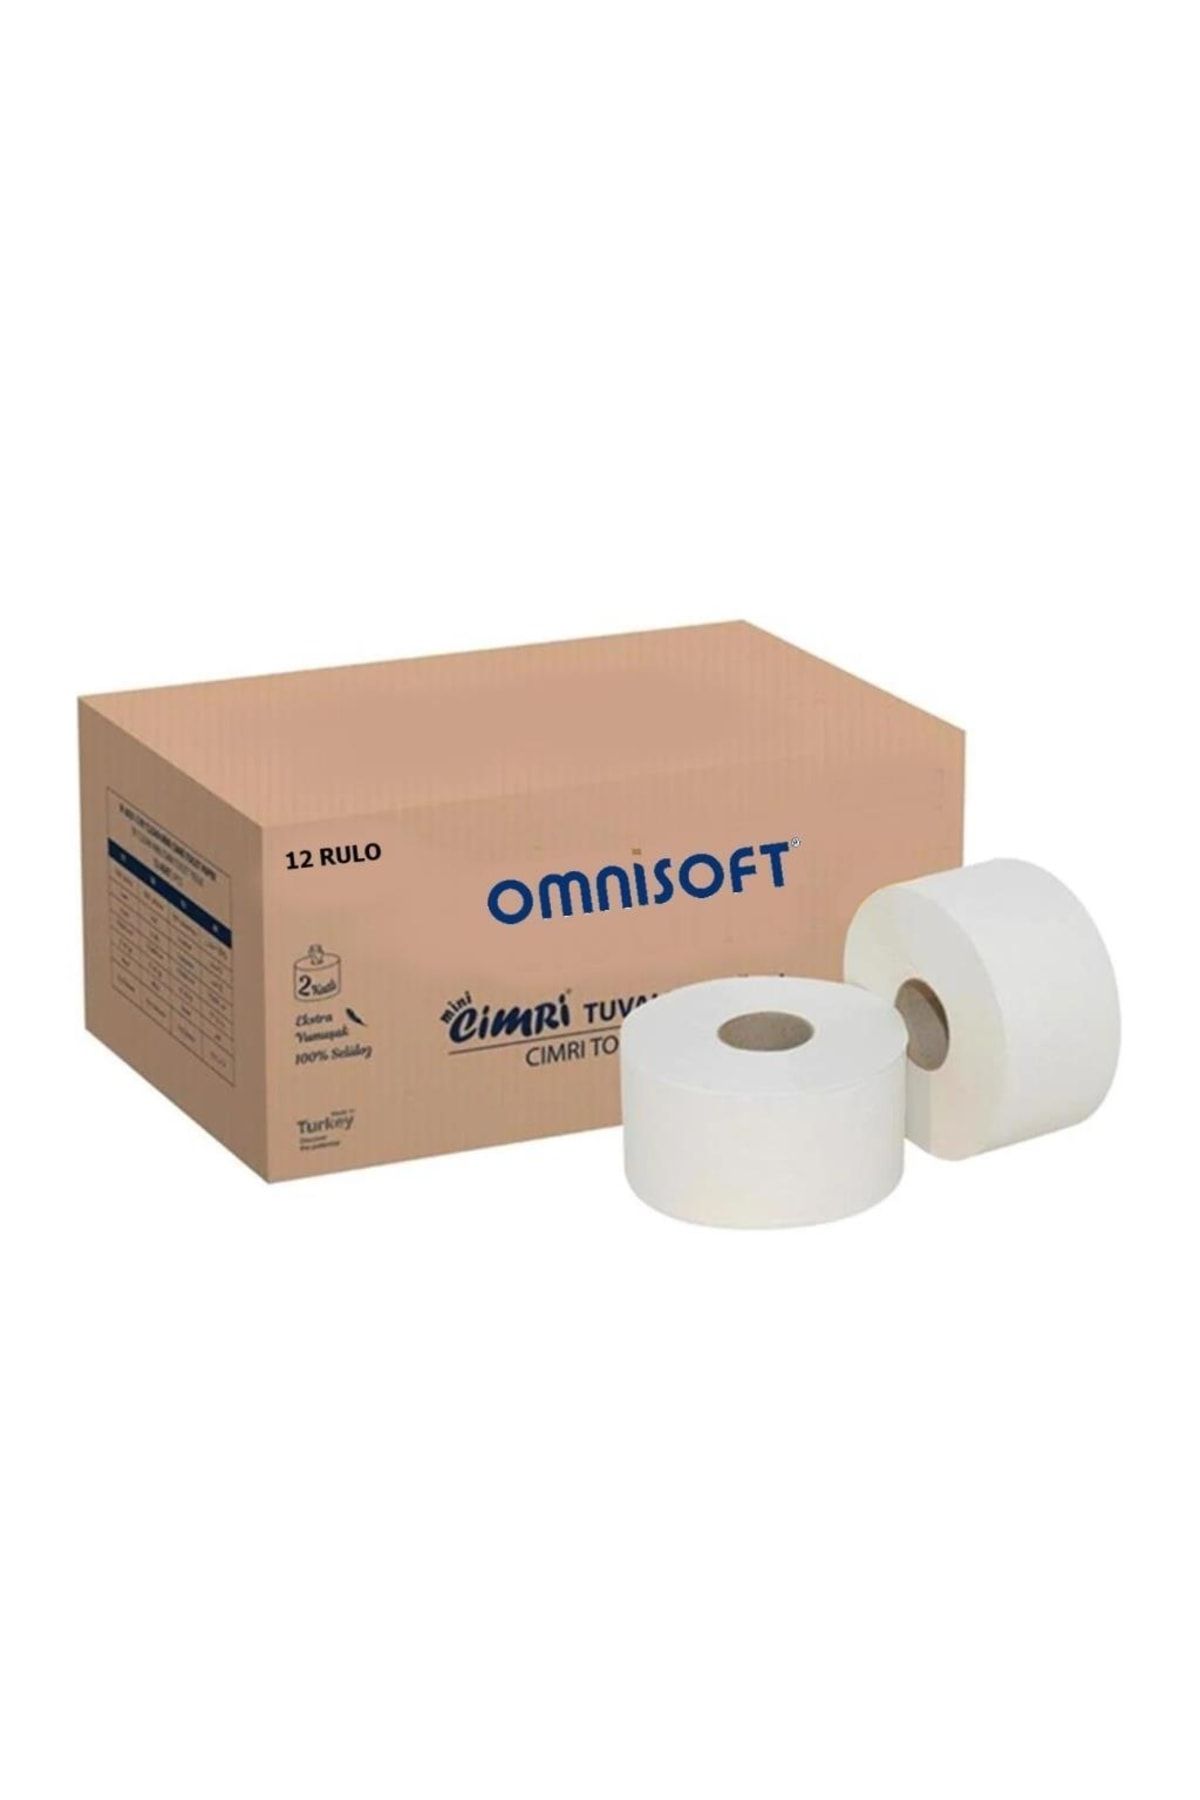 Omnisoft Mini Cimri Içten Çekmeli Tuvalet Kağıdı 4 Kg 12 Rulo